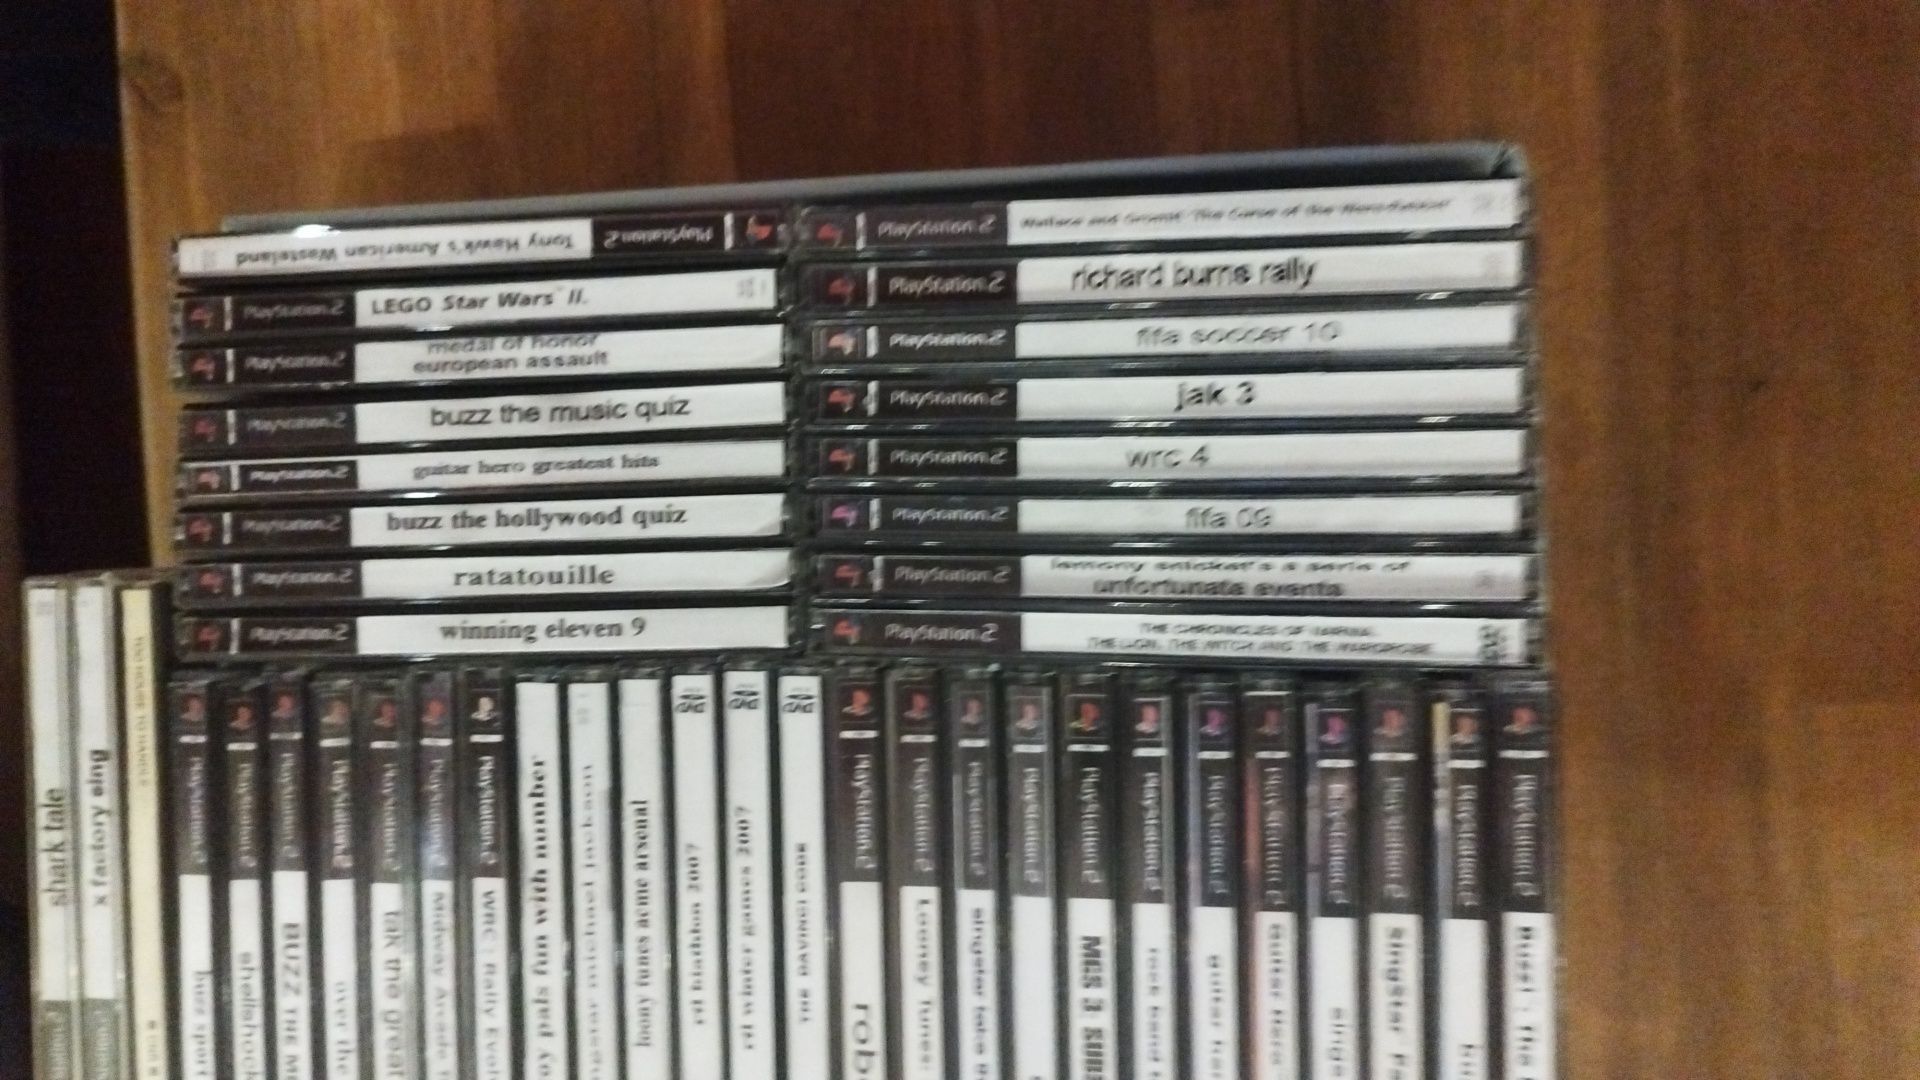 PlayStation 2 plus 2 pady plus 73 gry oraz oryg. karta pamieci